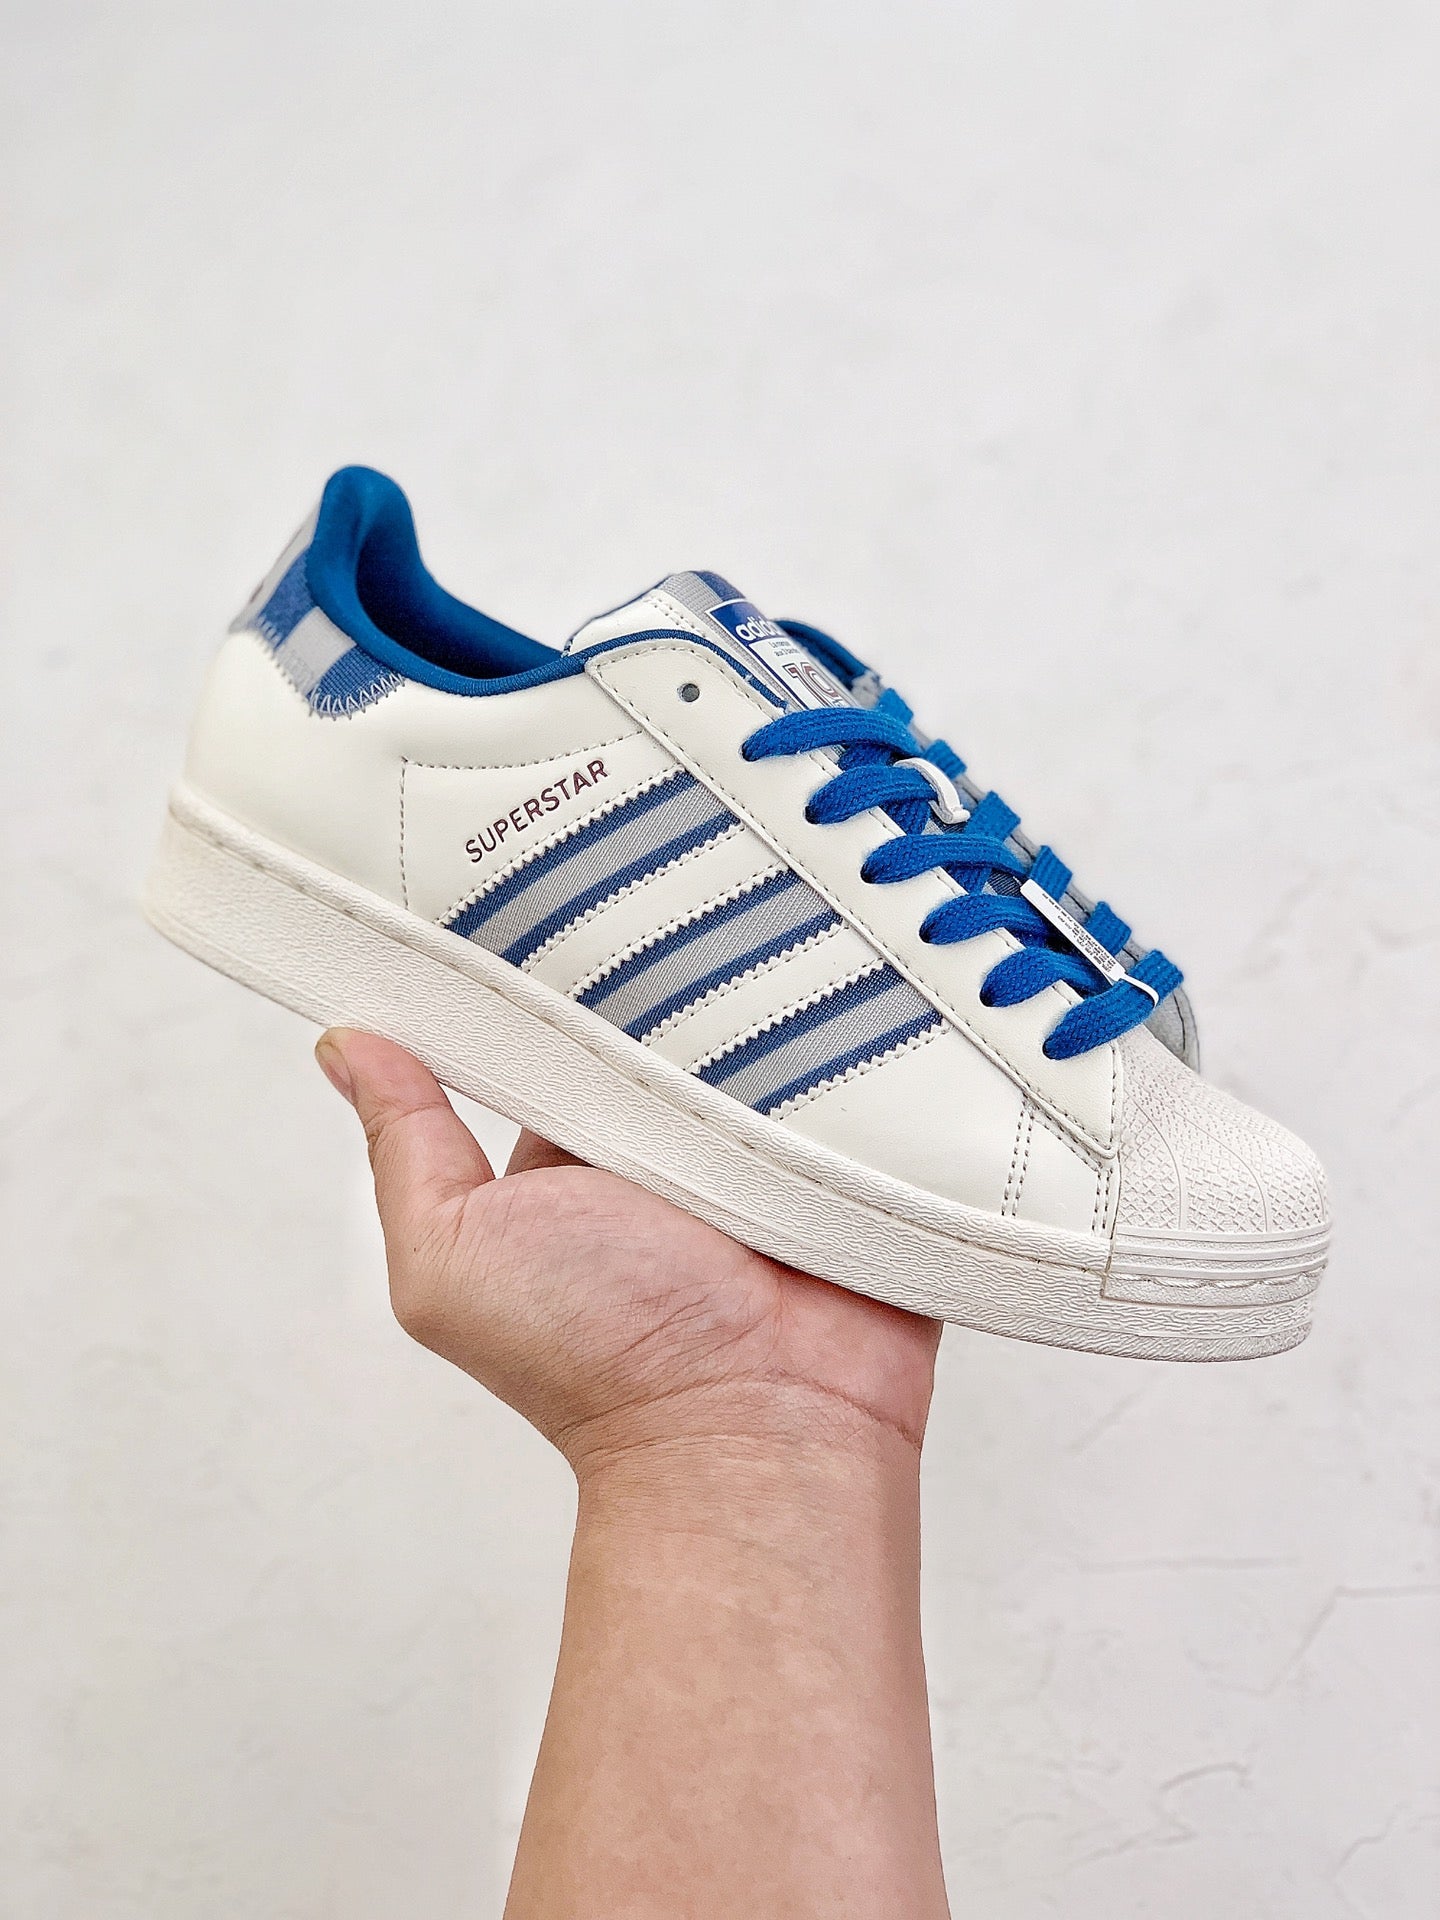 Adidas superstar white blue